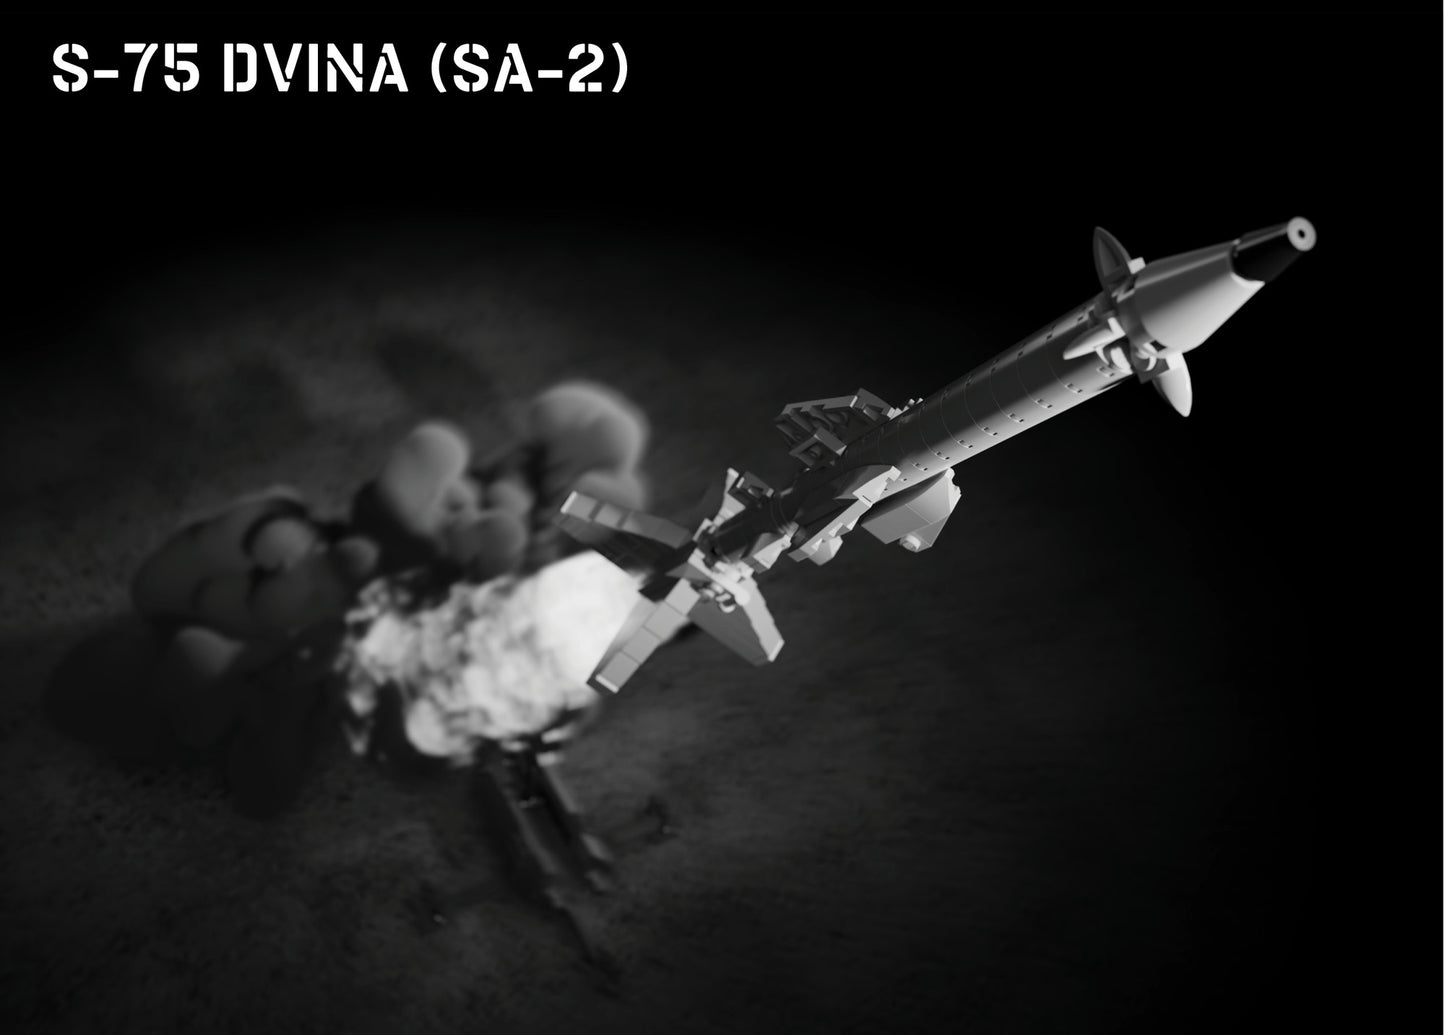 S-75 Dvina (SA-2) – Air Defense System